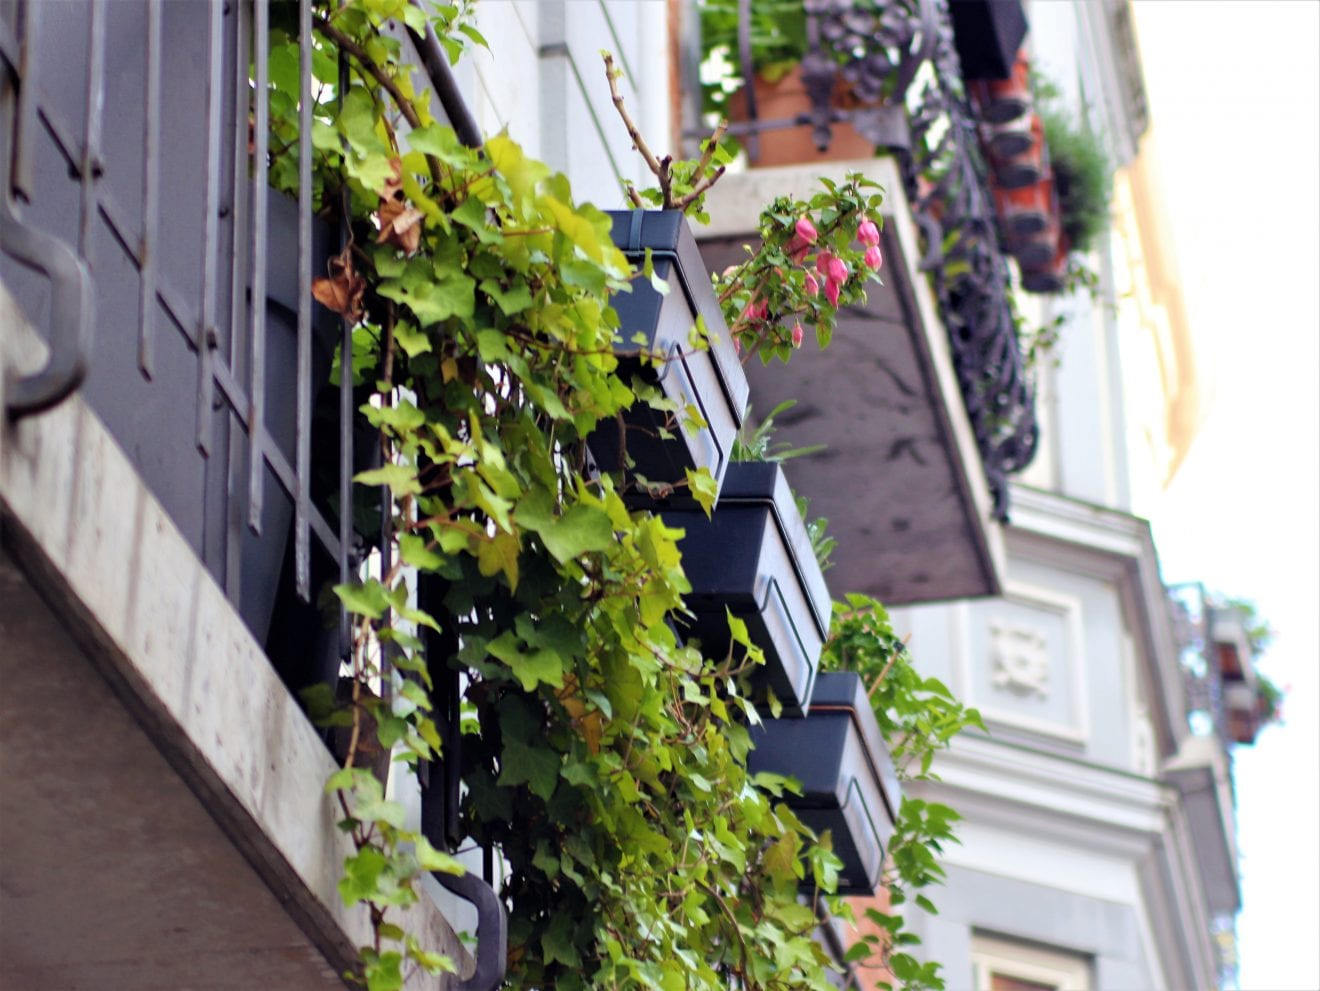 Ekspert: 10.000 gamle altaner i København bør tjekkes for nedstyrtningsfare